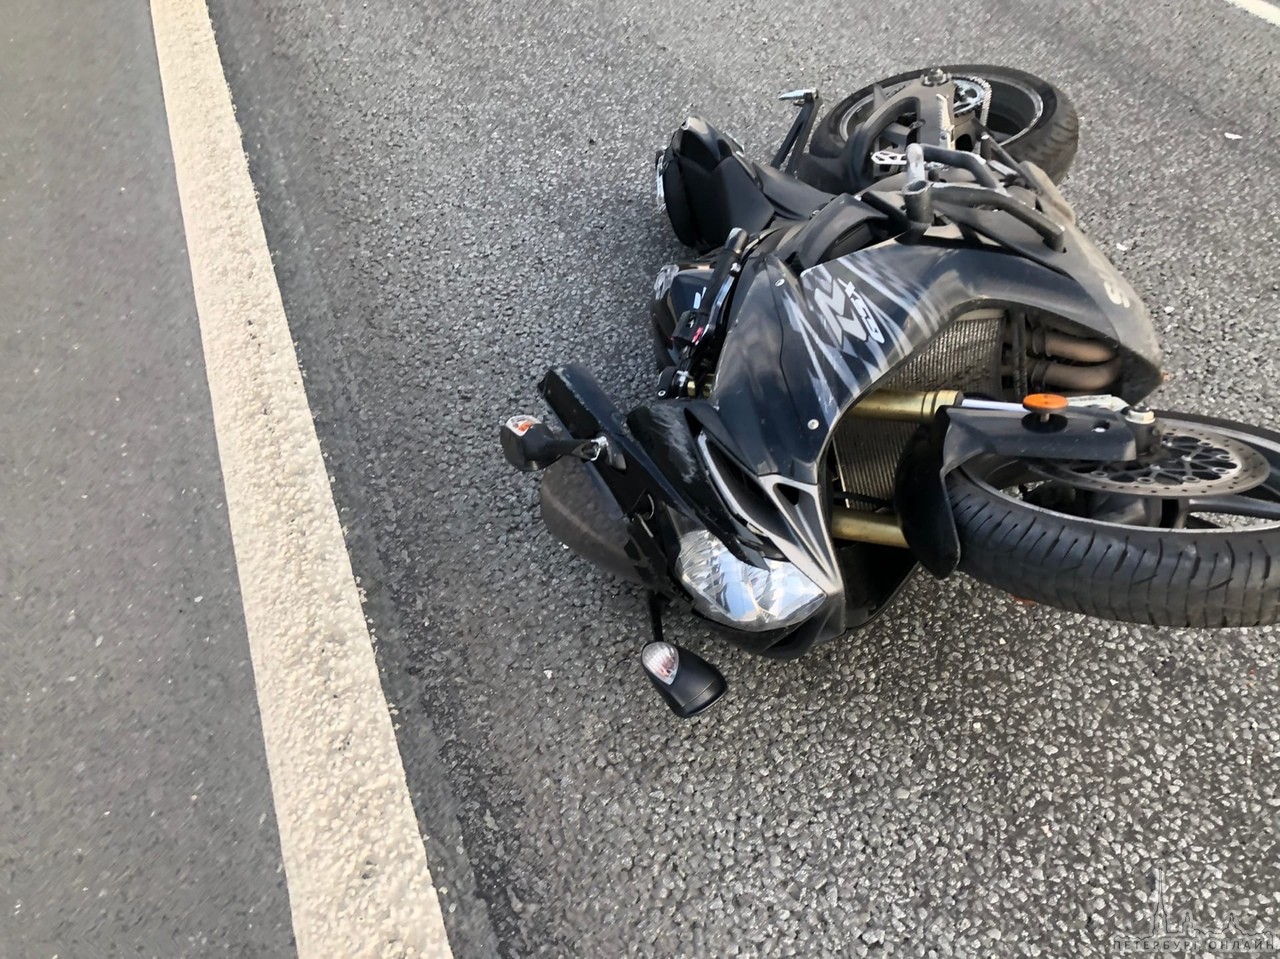 Skoda на кольце перестроилась и сбила мотоцикл, двойка погибла В 18.30 на 29 км внутреннего кольца...